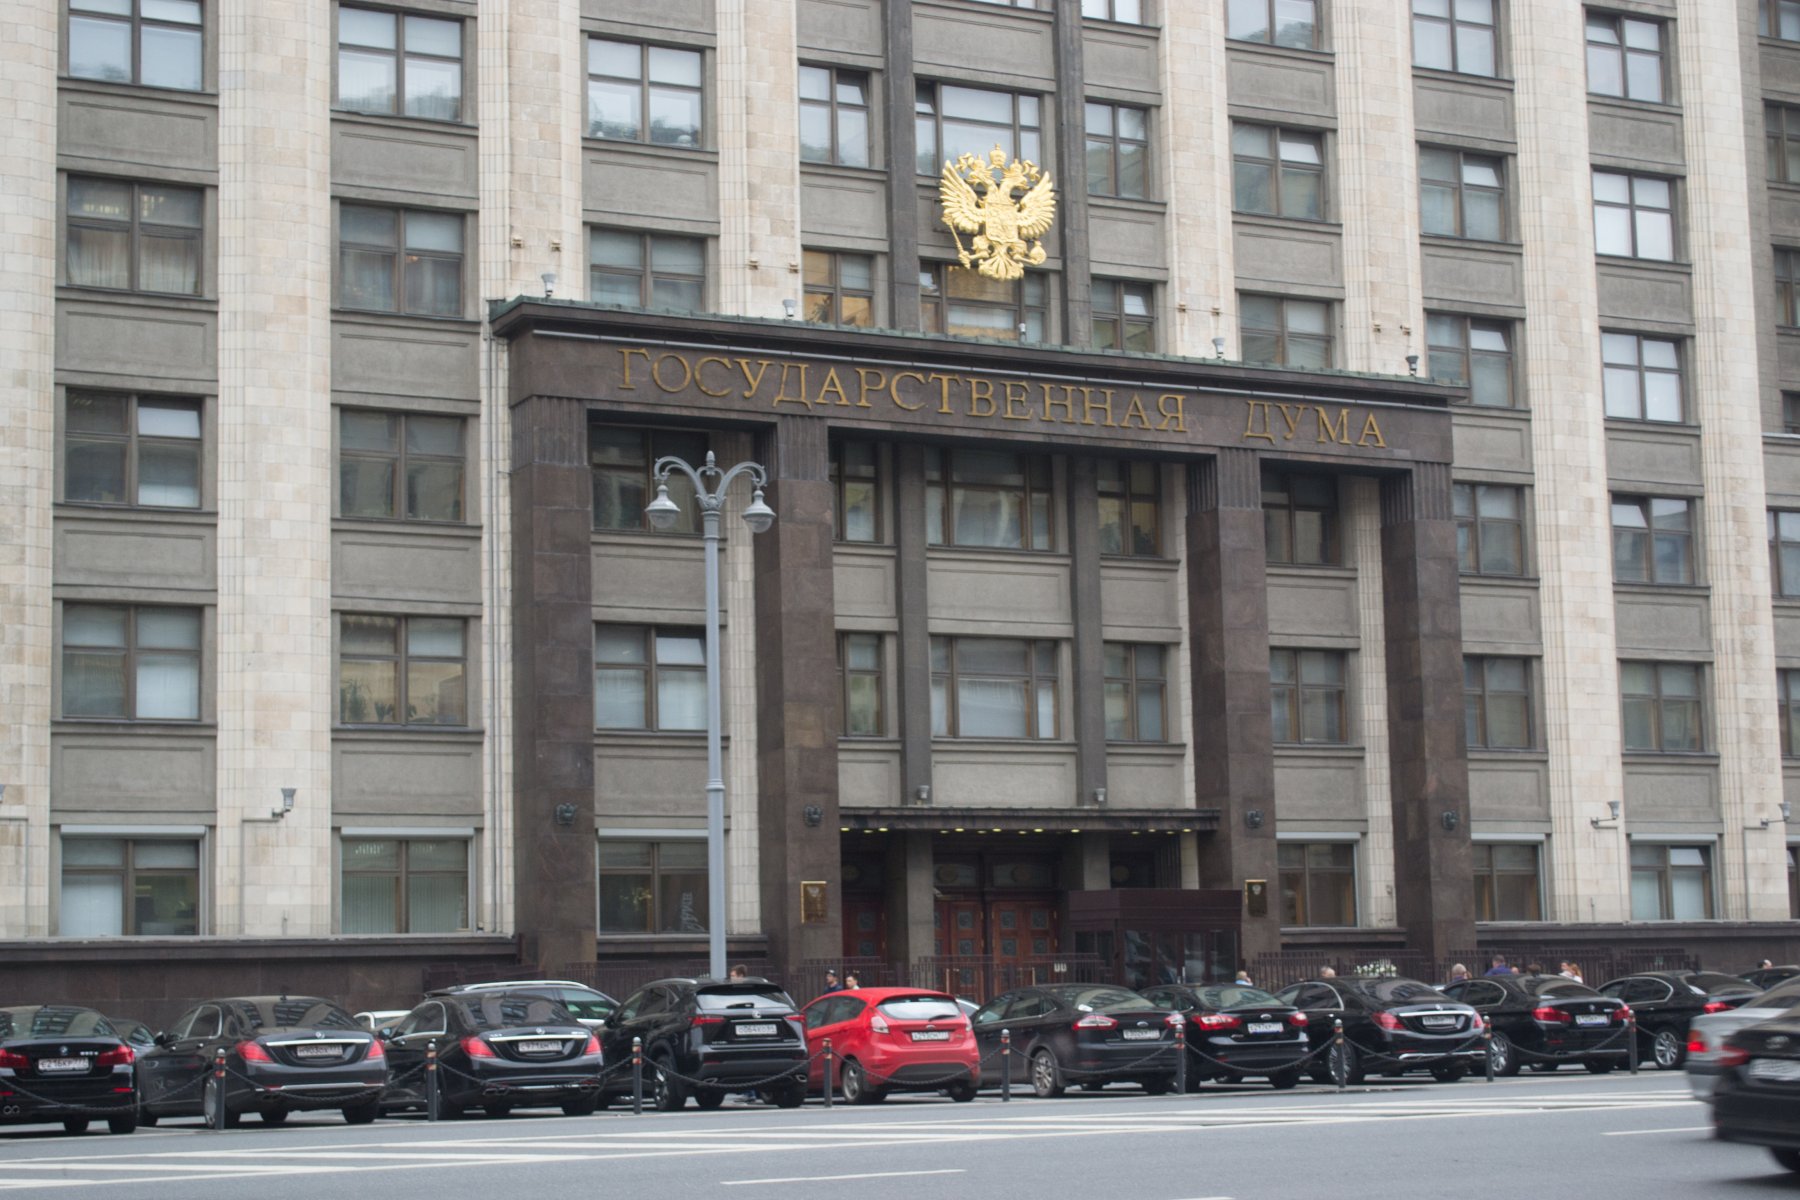 Сотрудница московского МФЦ осуждена за мошенничество с трудоустройством в Госдуму